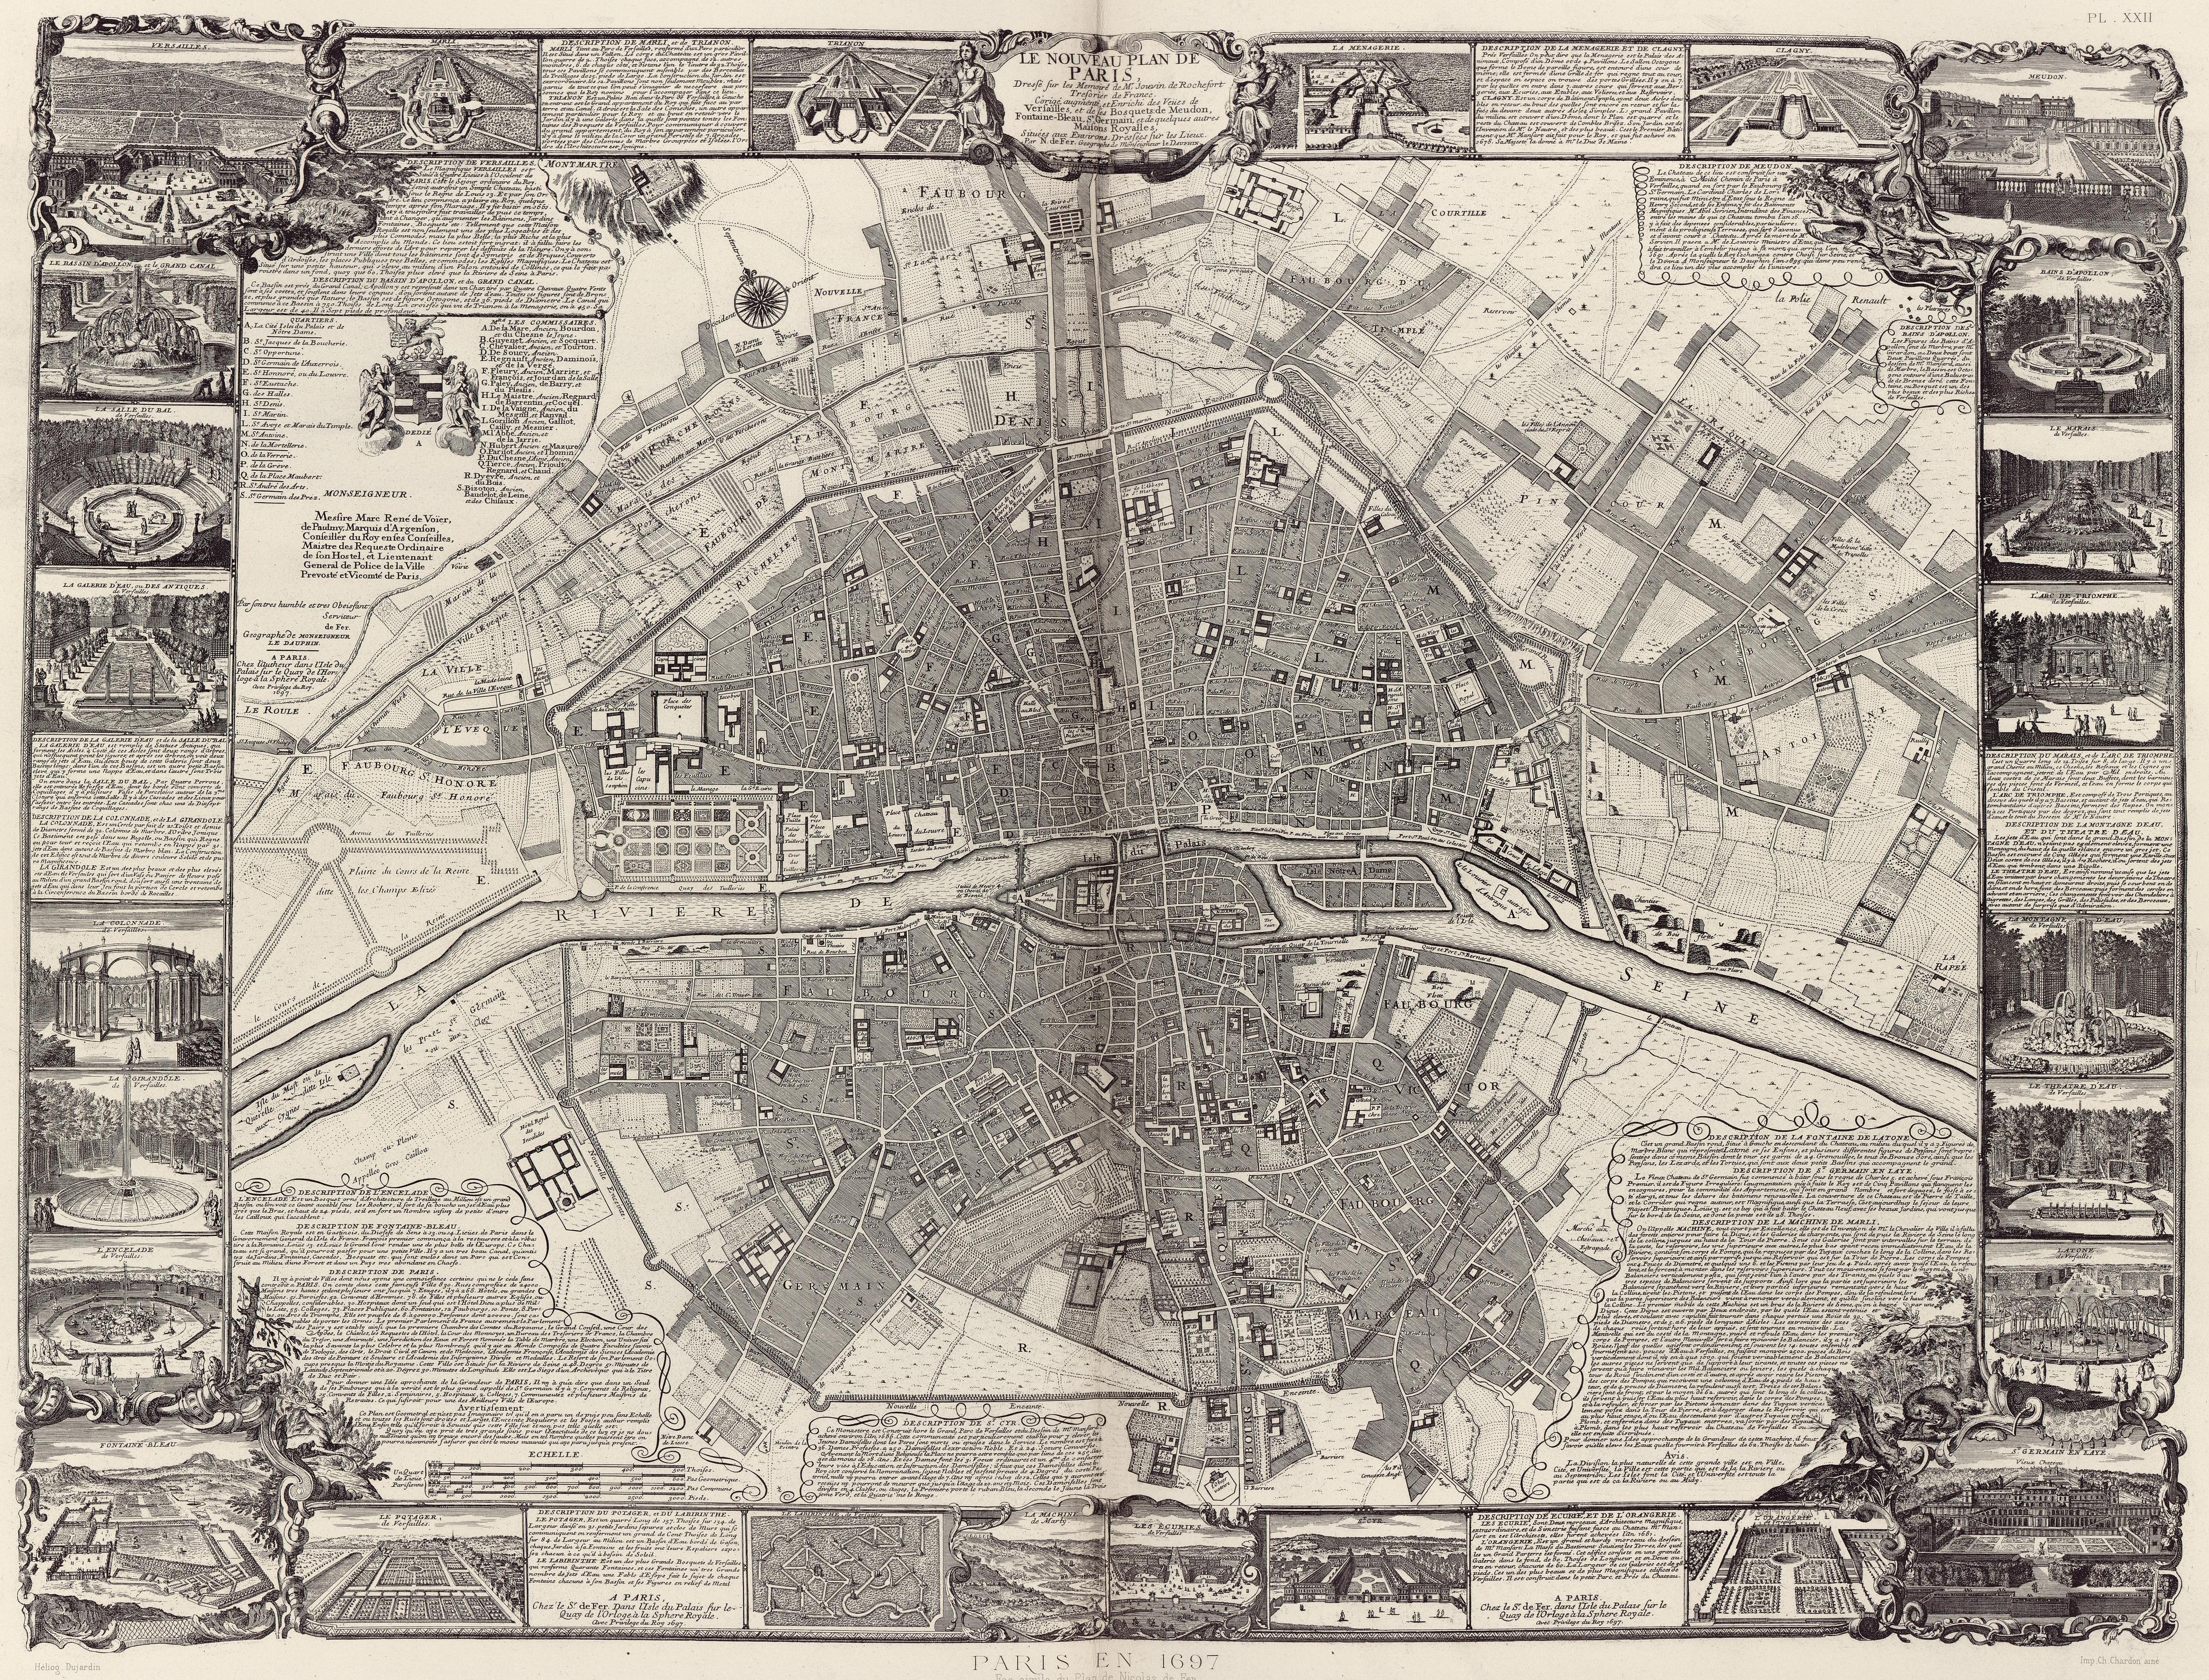 Paris en 1697. Fac-similé du plan de Nicolas de Fer